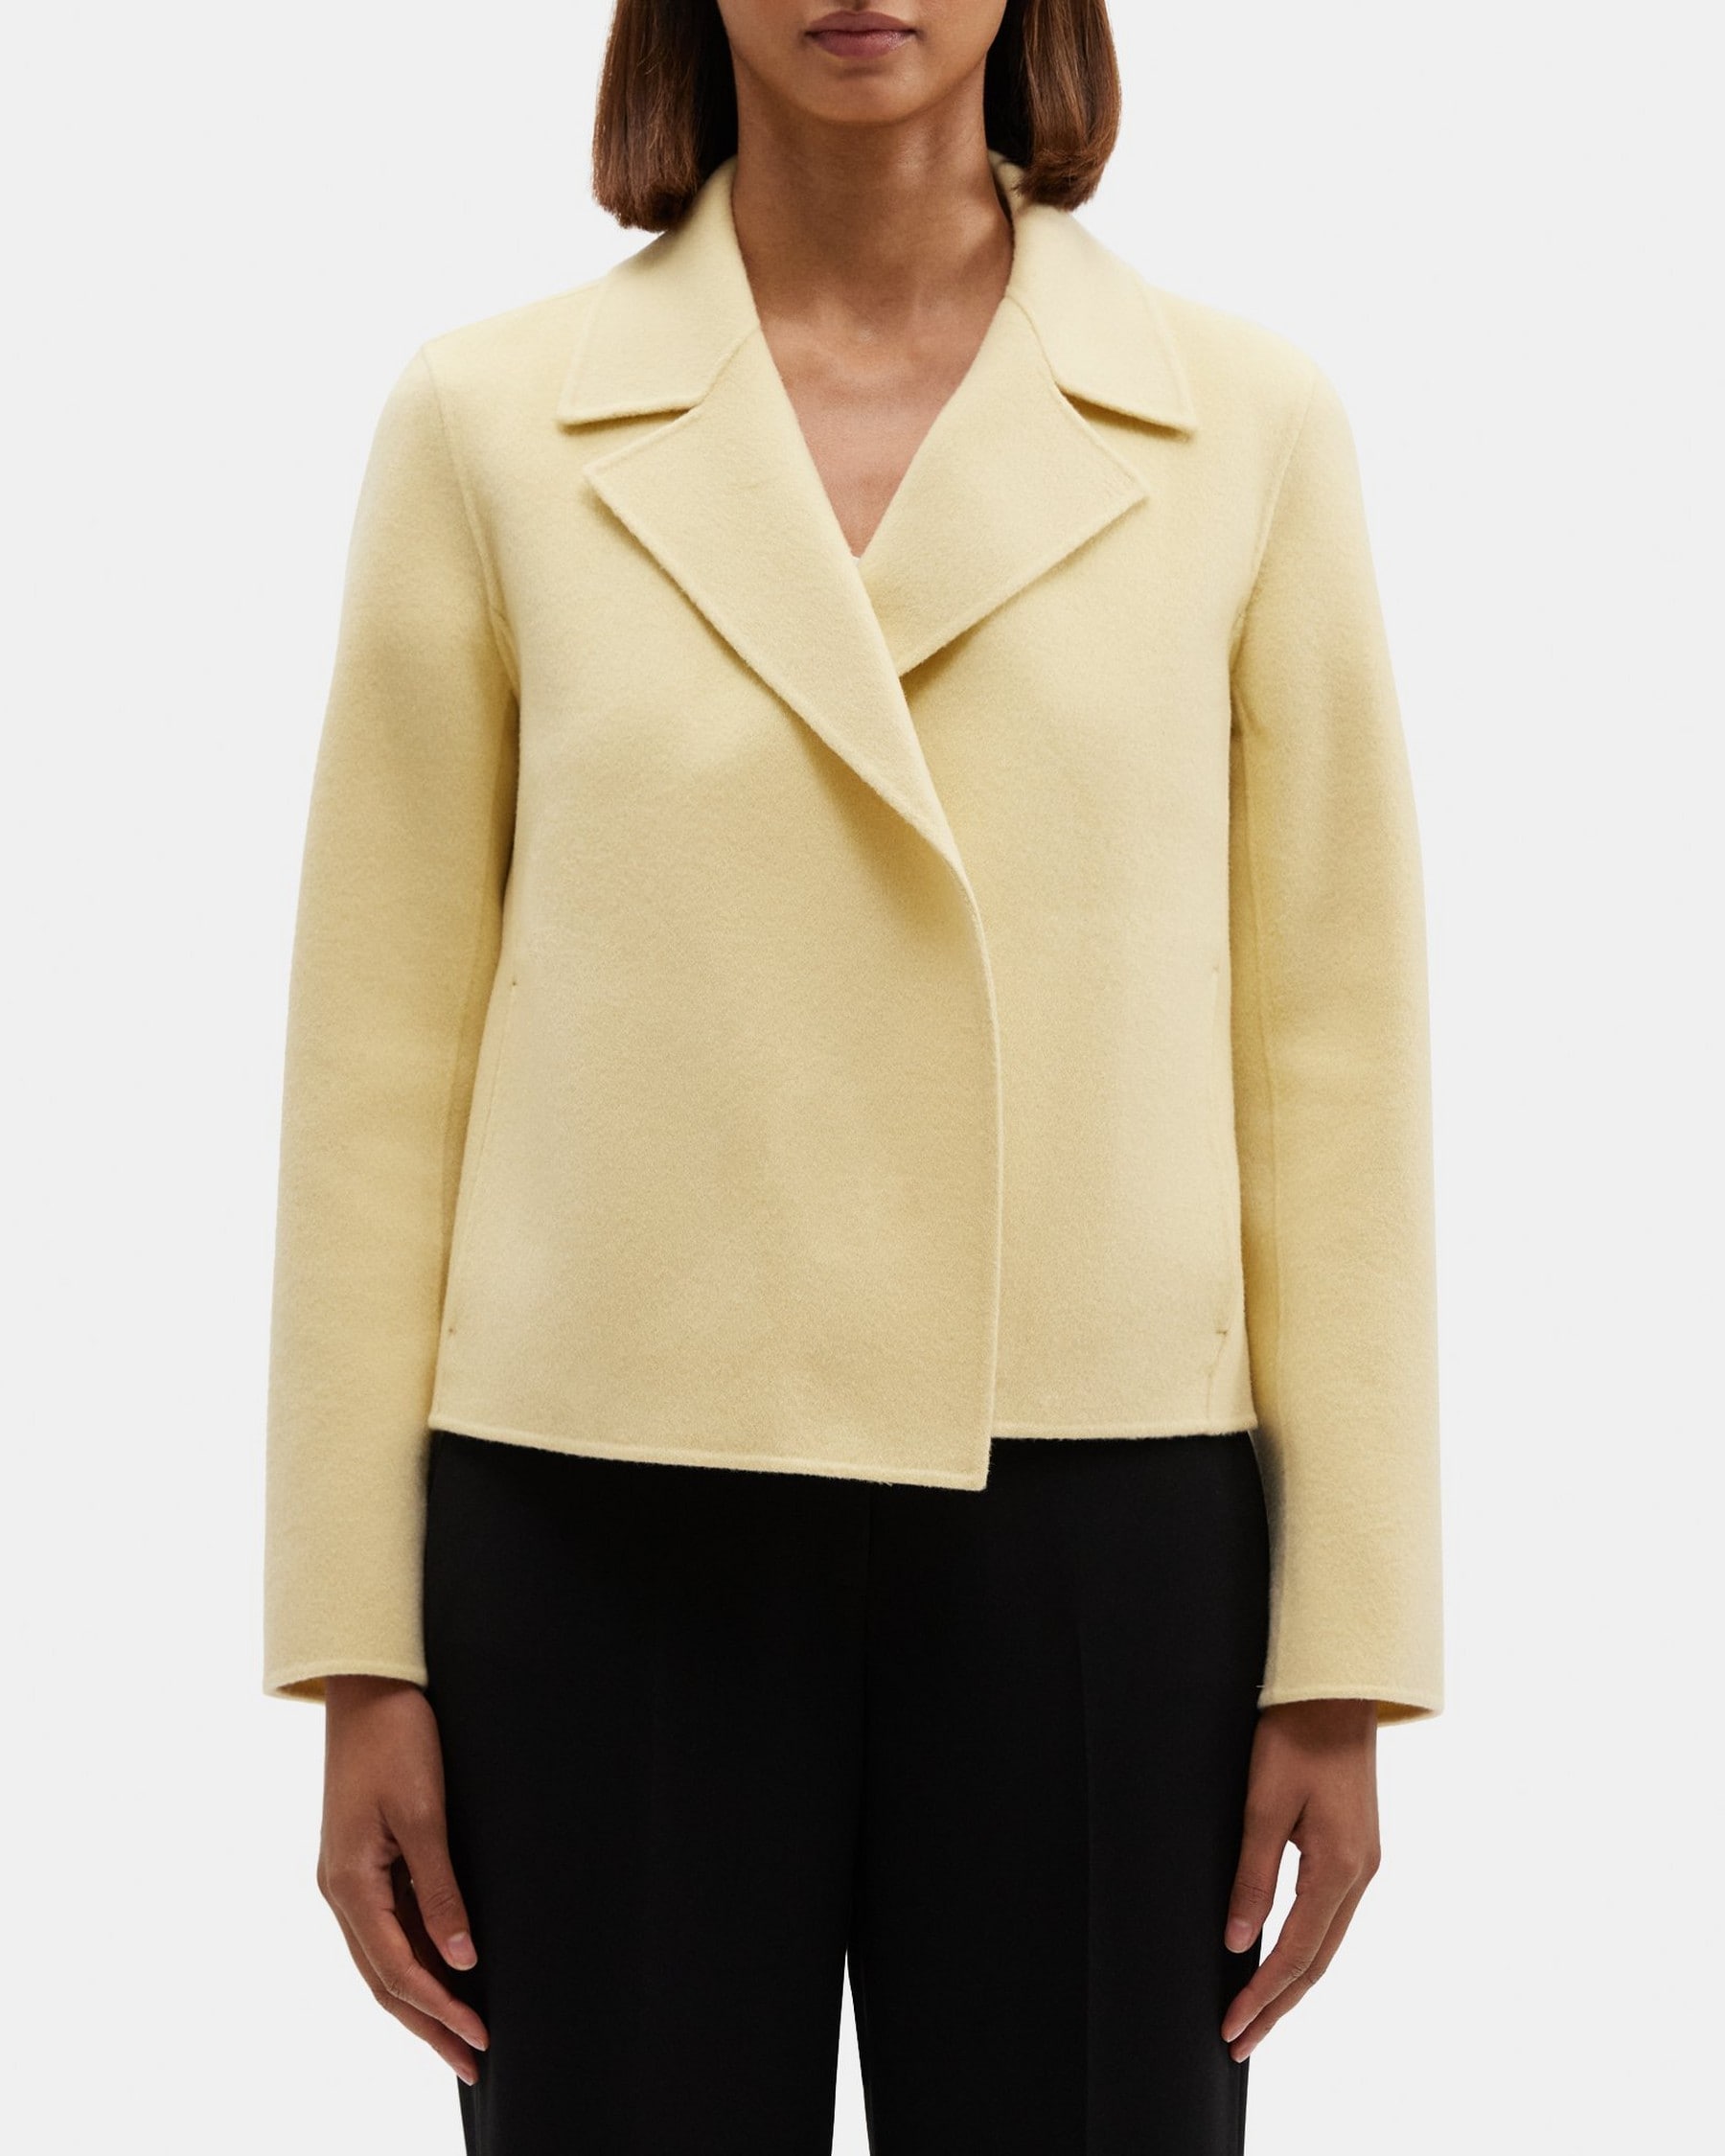 띠어리 Theory Cropped Open Front Jacket in Double-Face Wool-Cashmere,BUTTER YELLOW